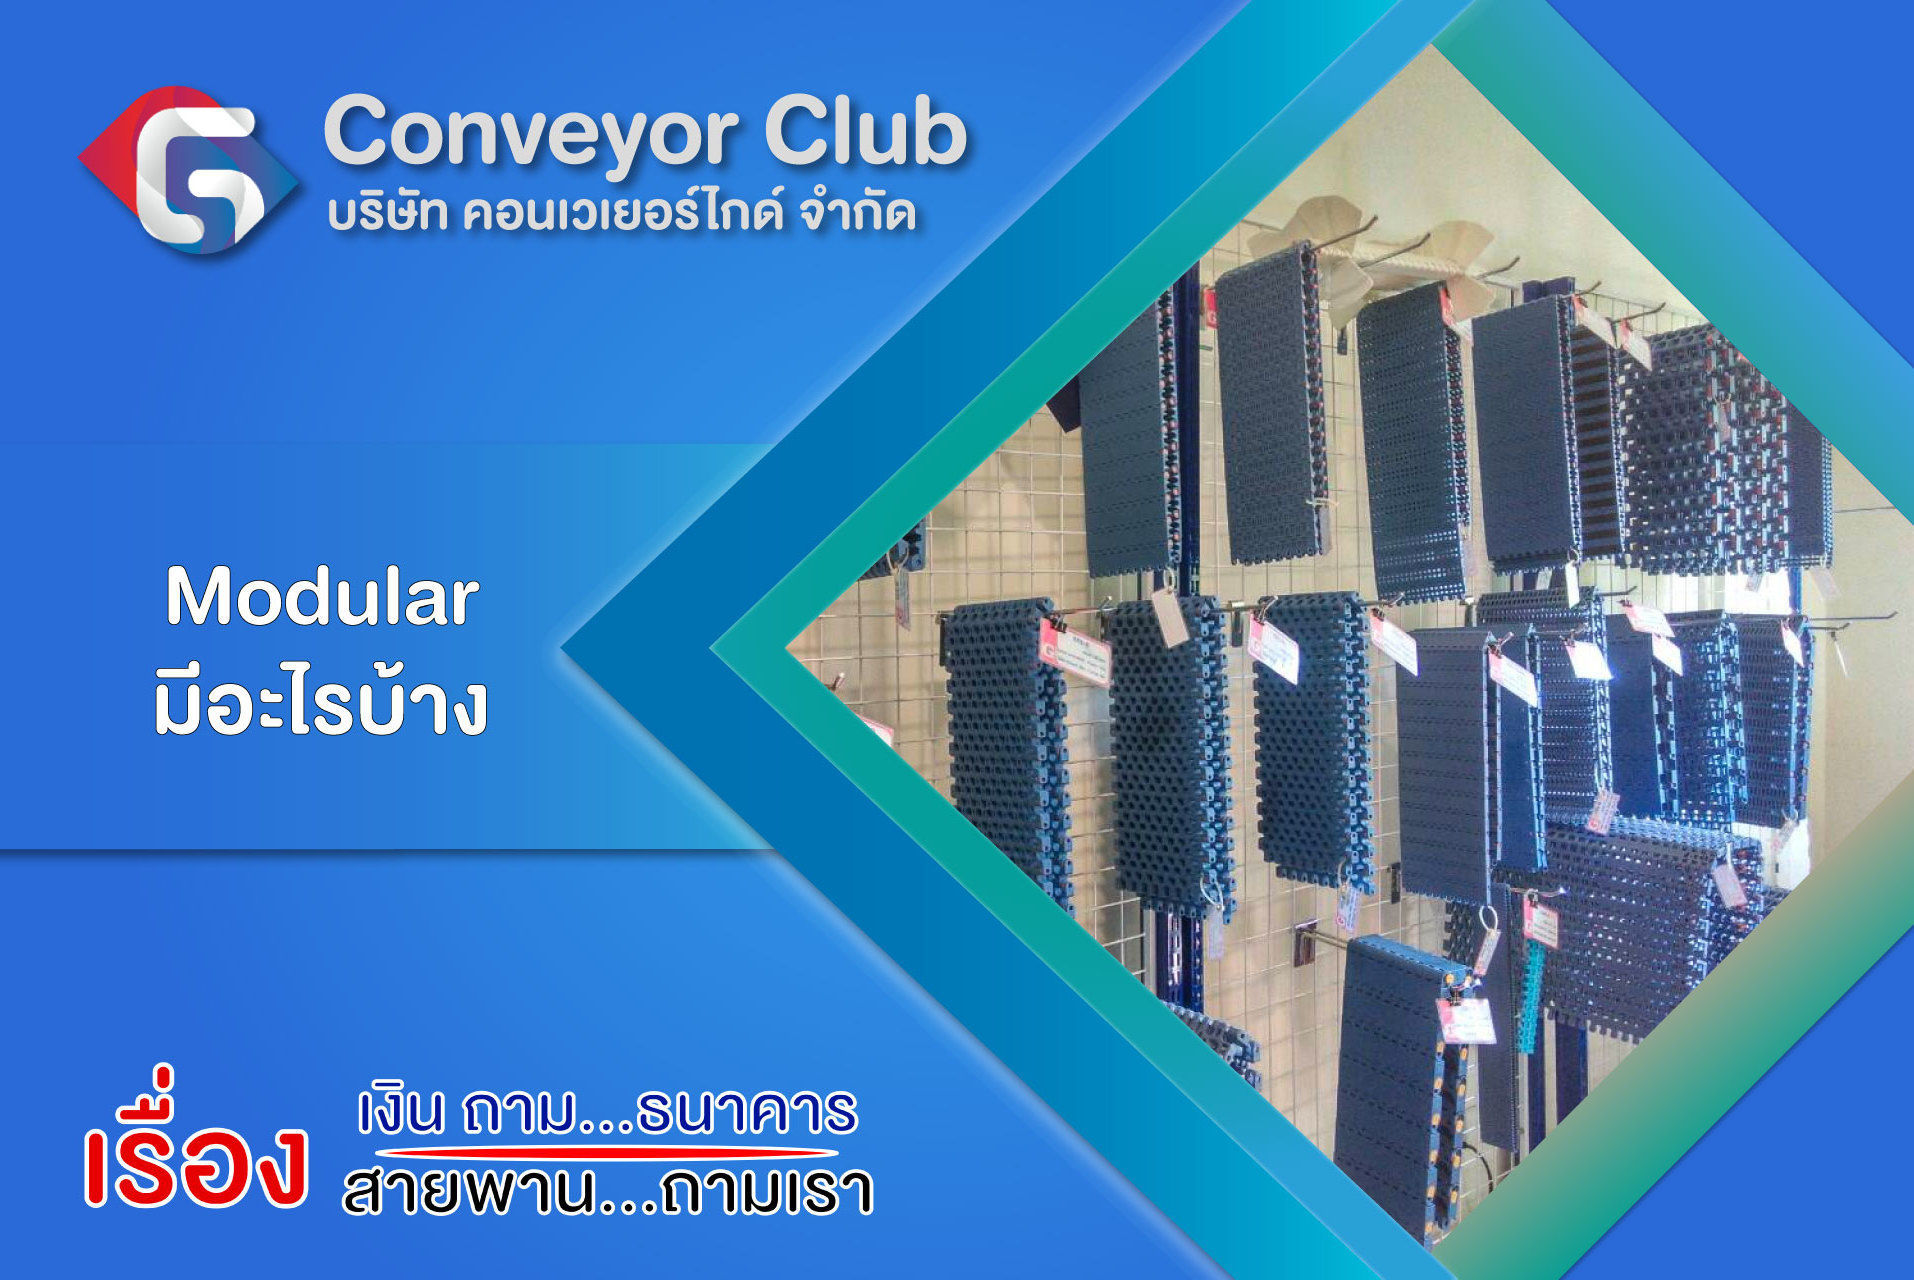 ระบบสายพานลำเลียง Modular Belt Conveyor มีส่วนประกอบหลักๆที่เป็นอุปกรณ์พื้นฐานที่ประกอบให้ระบบทำงานได้มีด้วยกัน 3 ประเภทดังนี้